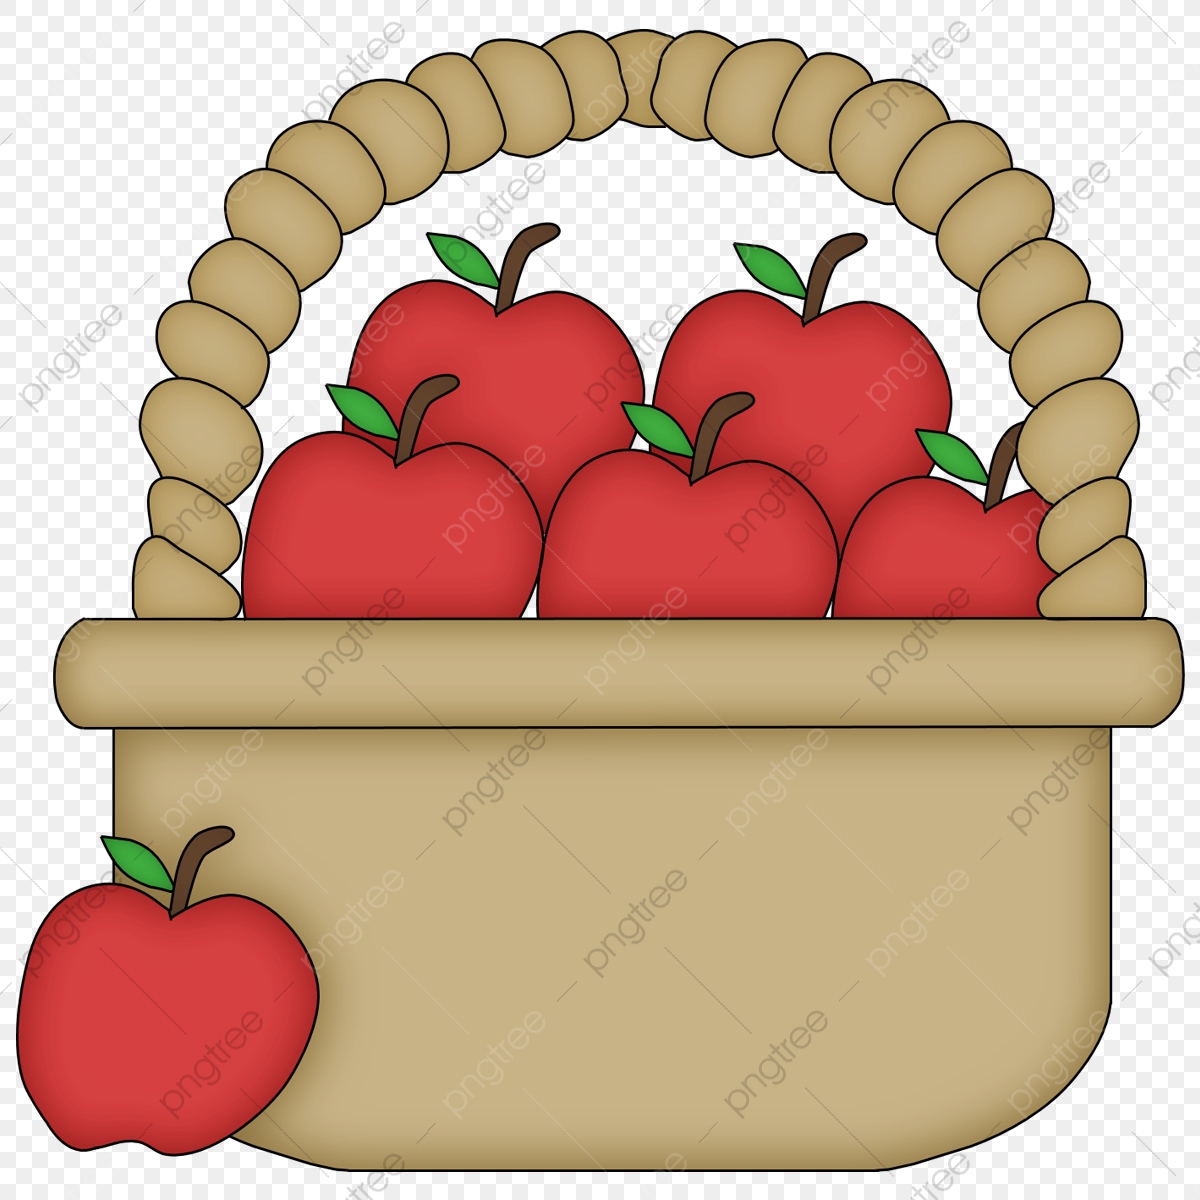 Basket Of Red Apples, Basket, Red Apple, Cartoon PNG Transparent.